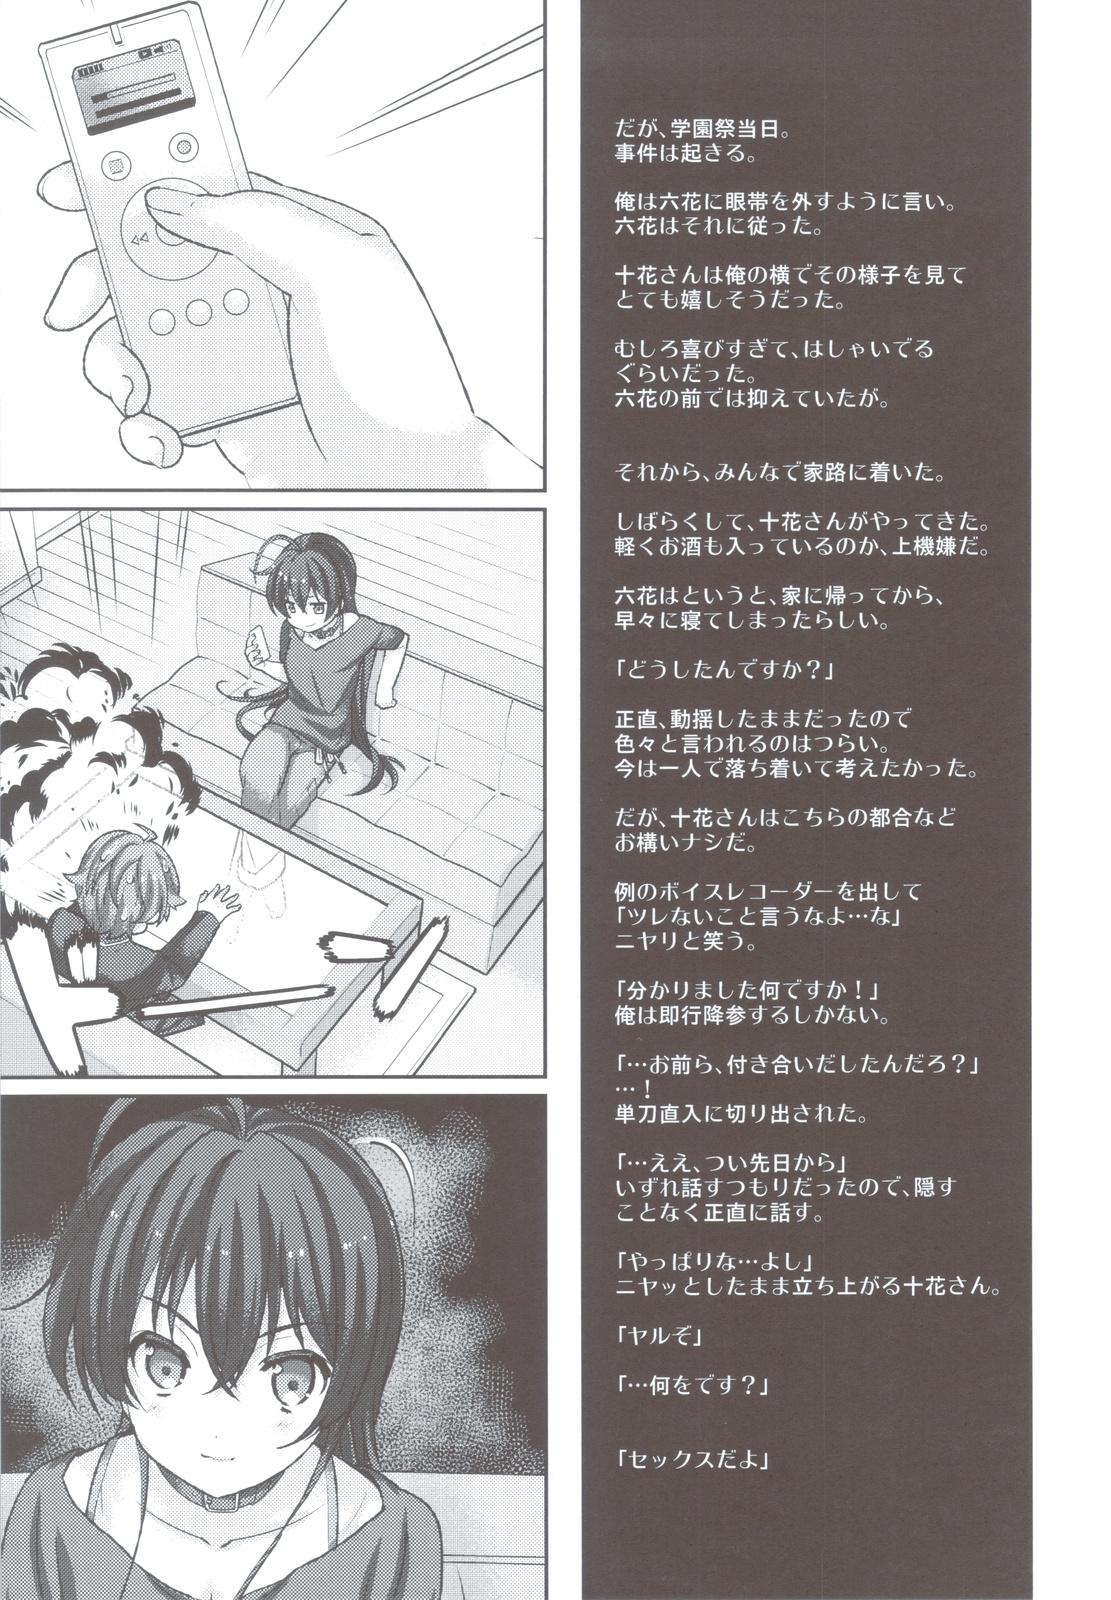 Jockstrap Koi Shita Kanojo wa Chuunibyou - Chuunibyou demo koi ga shitai Full - Page 6